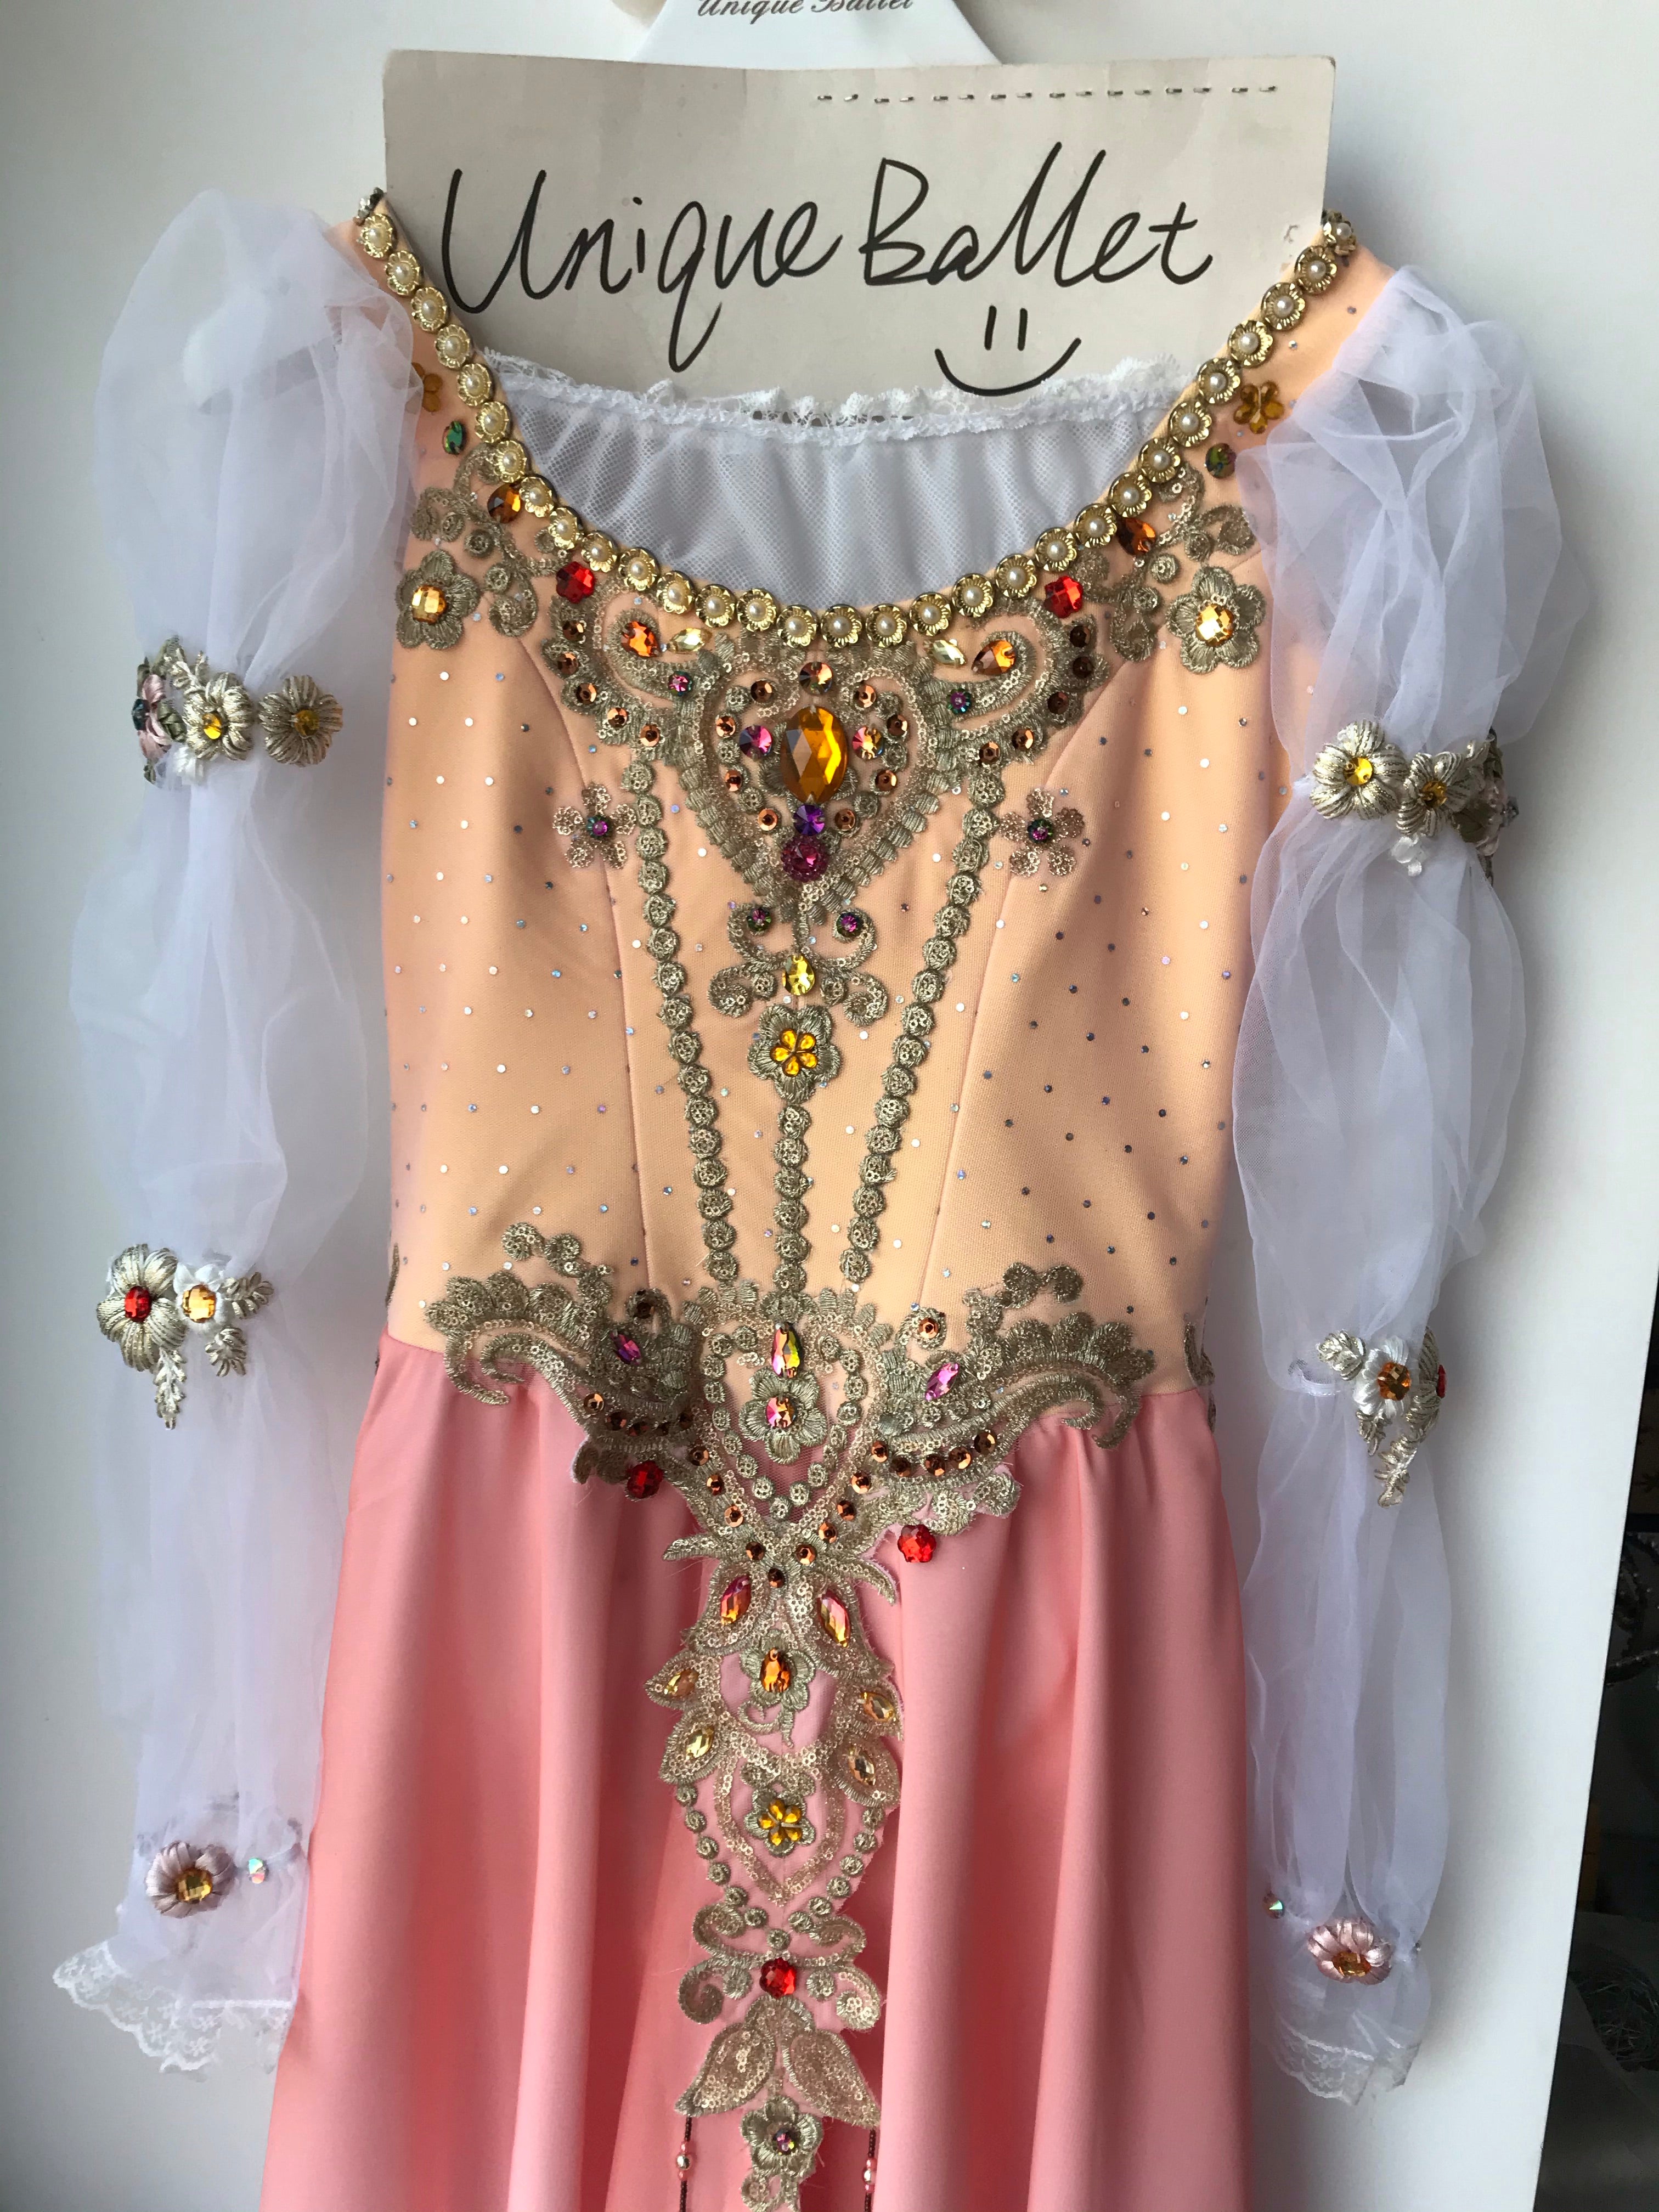 Swan Lake Pas De Troid Variation Act 1 Professional Peach Long Romantic Ballet TuTu Lyrical Long Tutu Dress Costume For Juliet -QWLSWNPECH